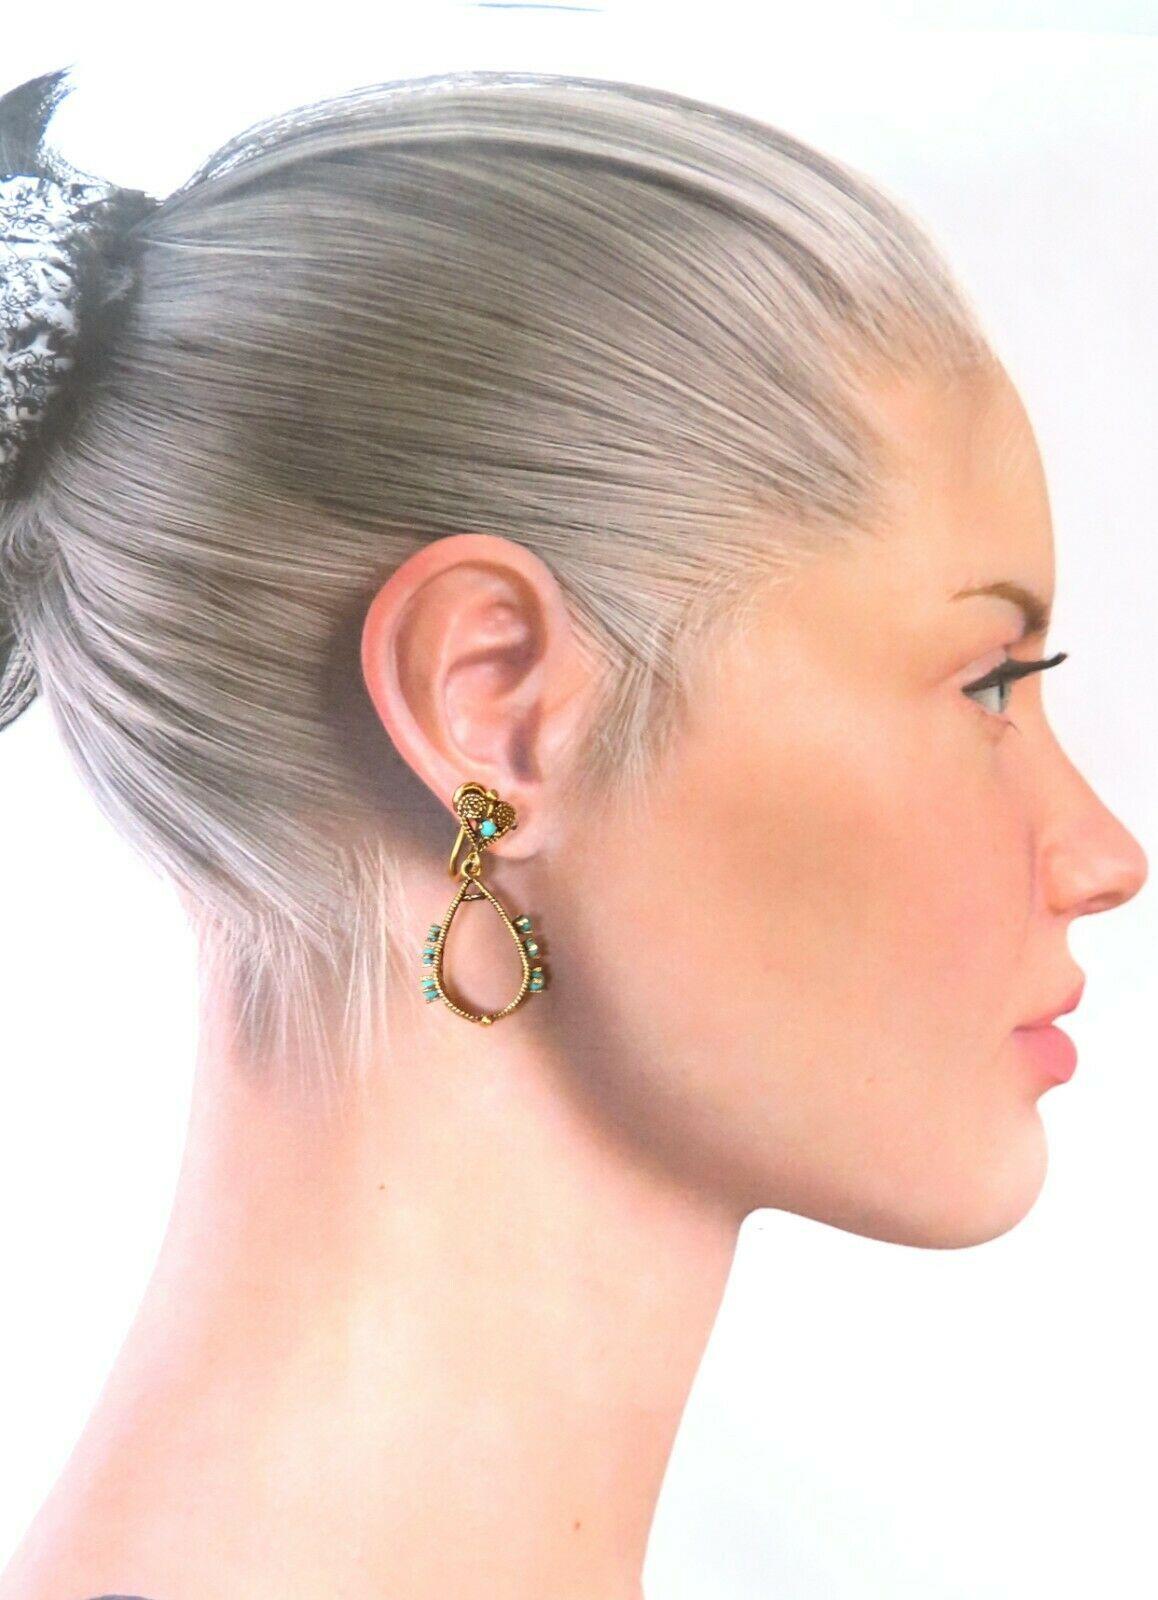 Boucles d'oreilles pendantes en turquoise naturelle

Longueur des boucles d'oreilles : 1,25 pouce

Or jaune 14kt 7,8 grammes